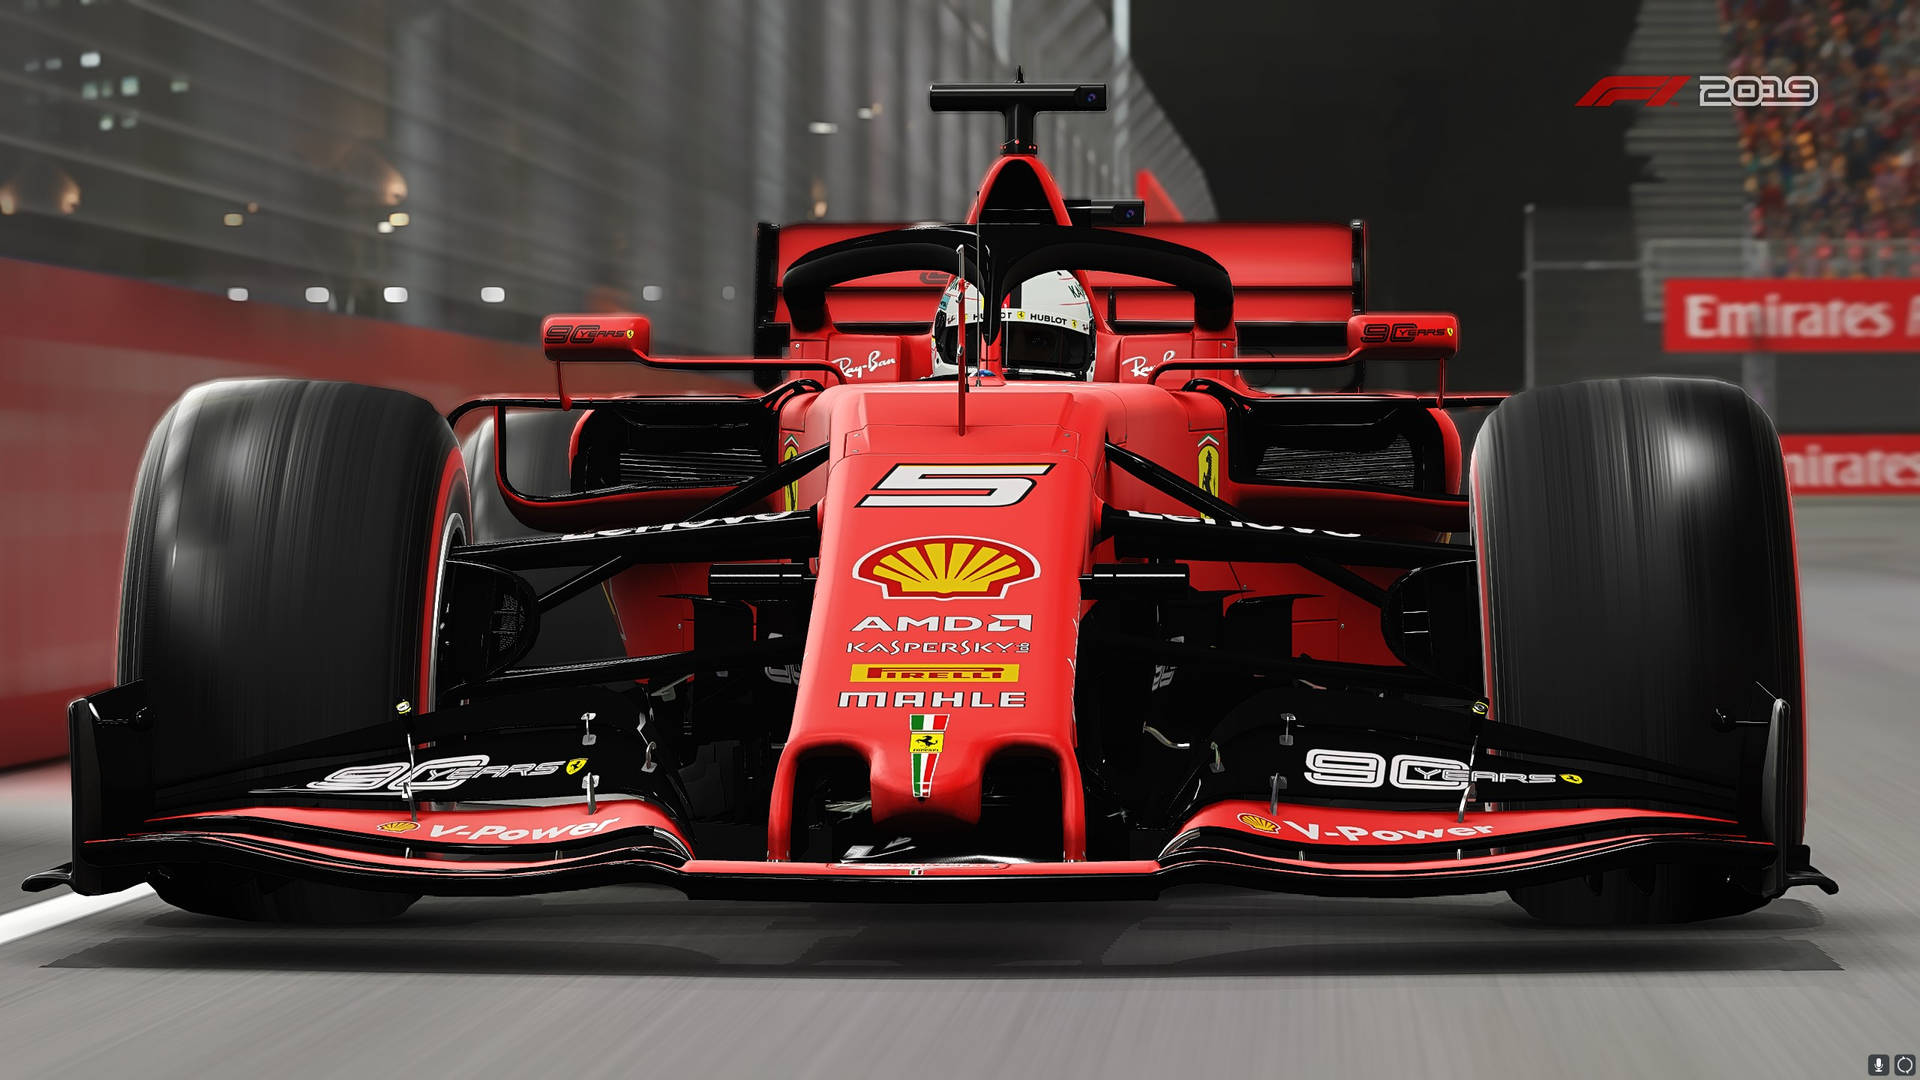 Vettel's #5 Car In F1 2019 Background